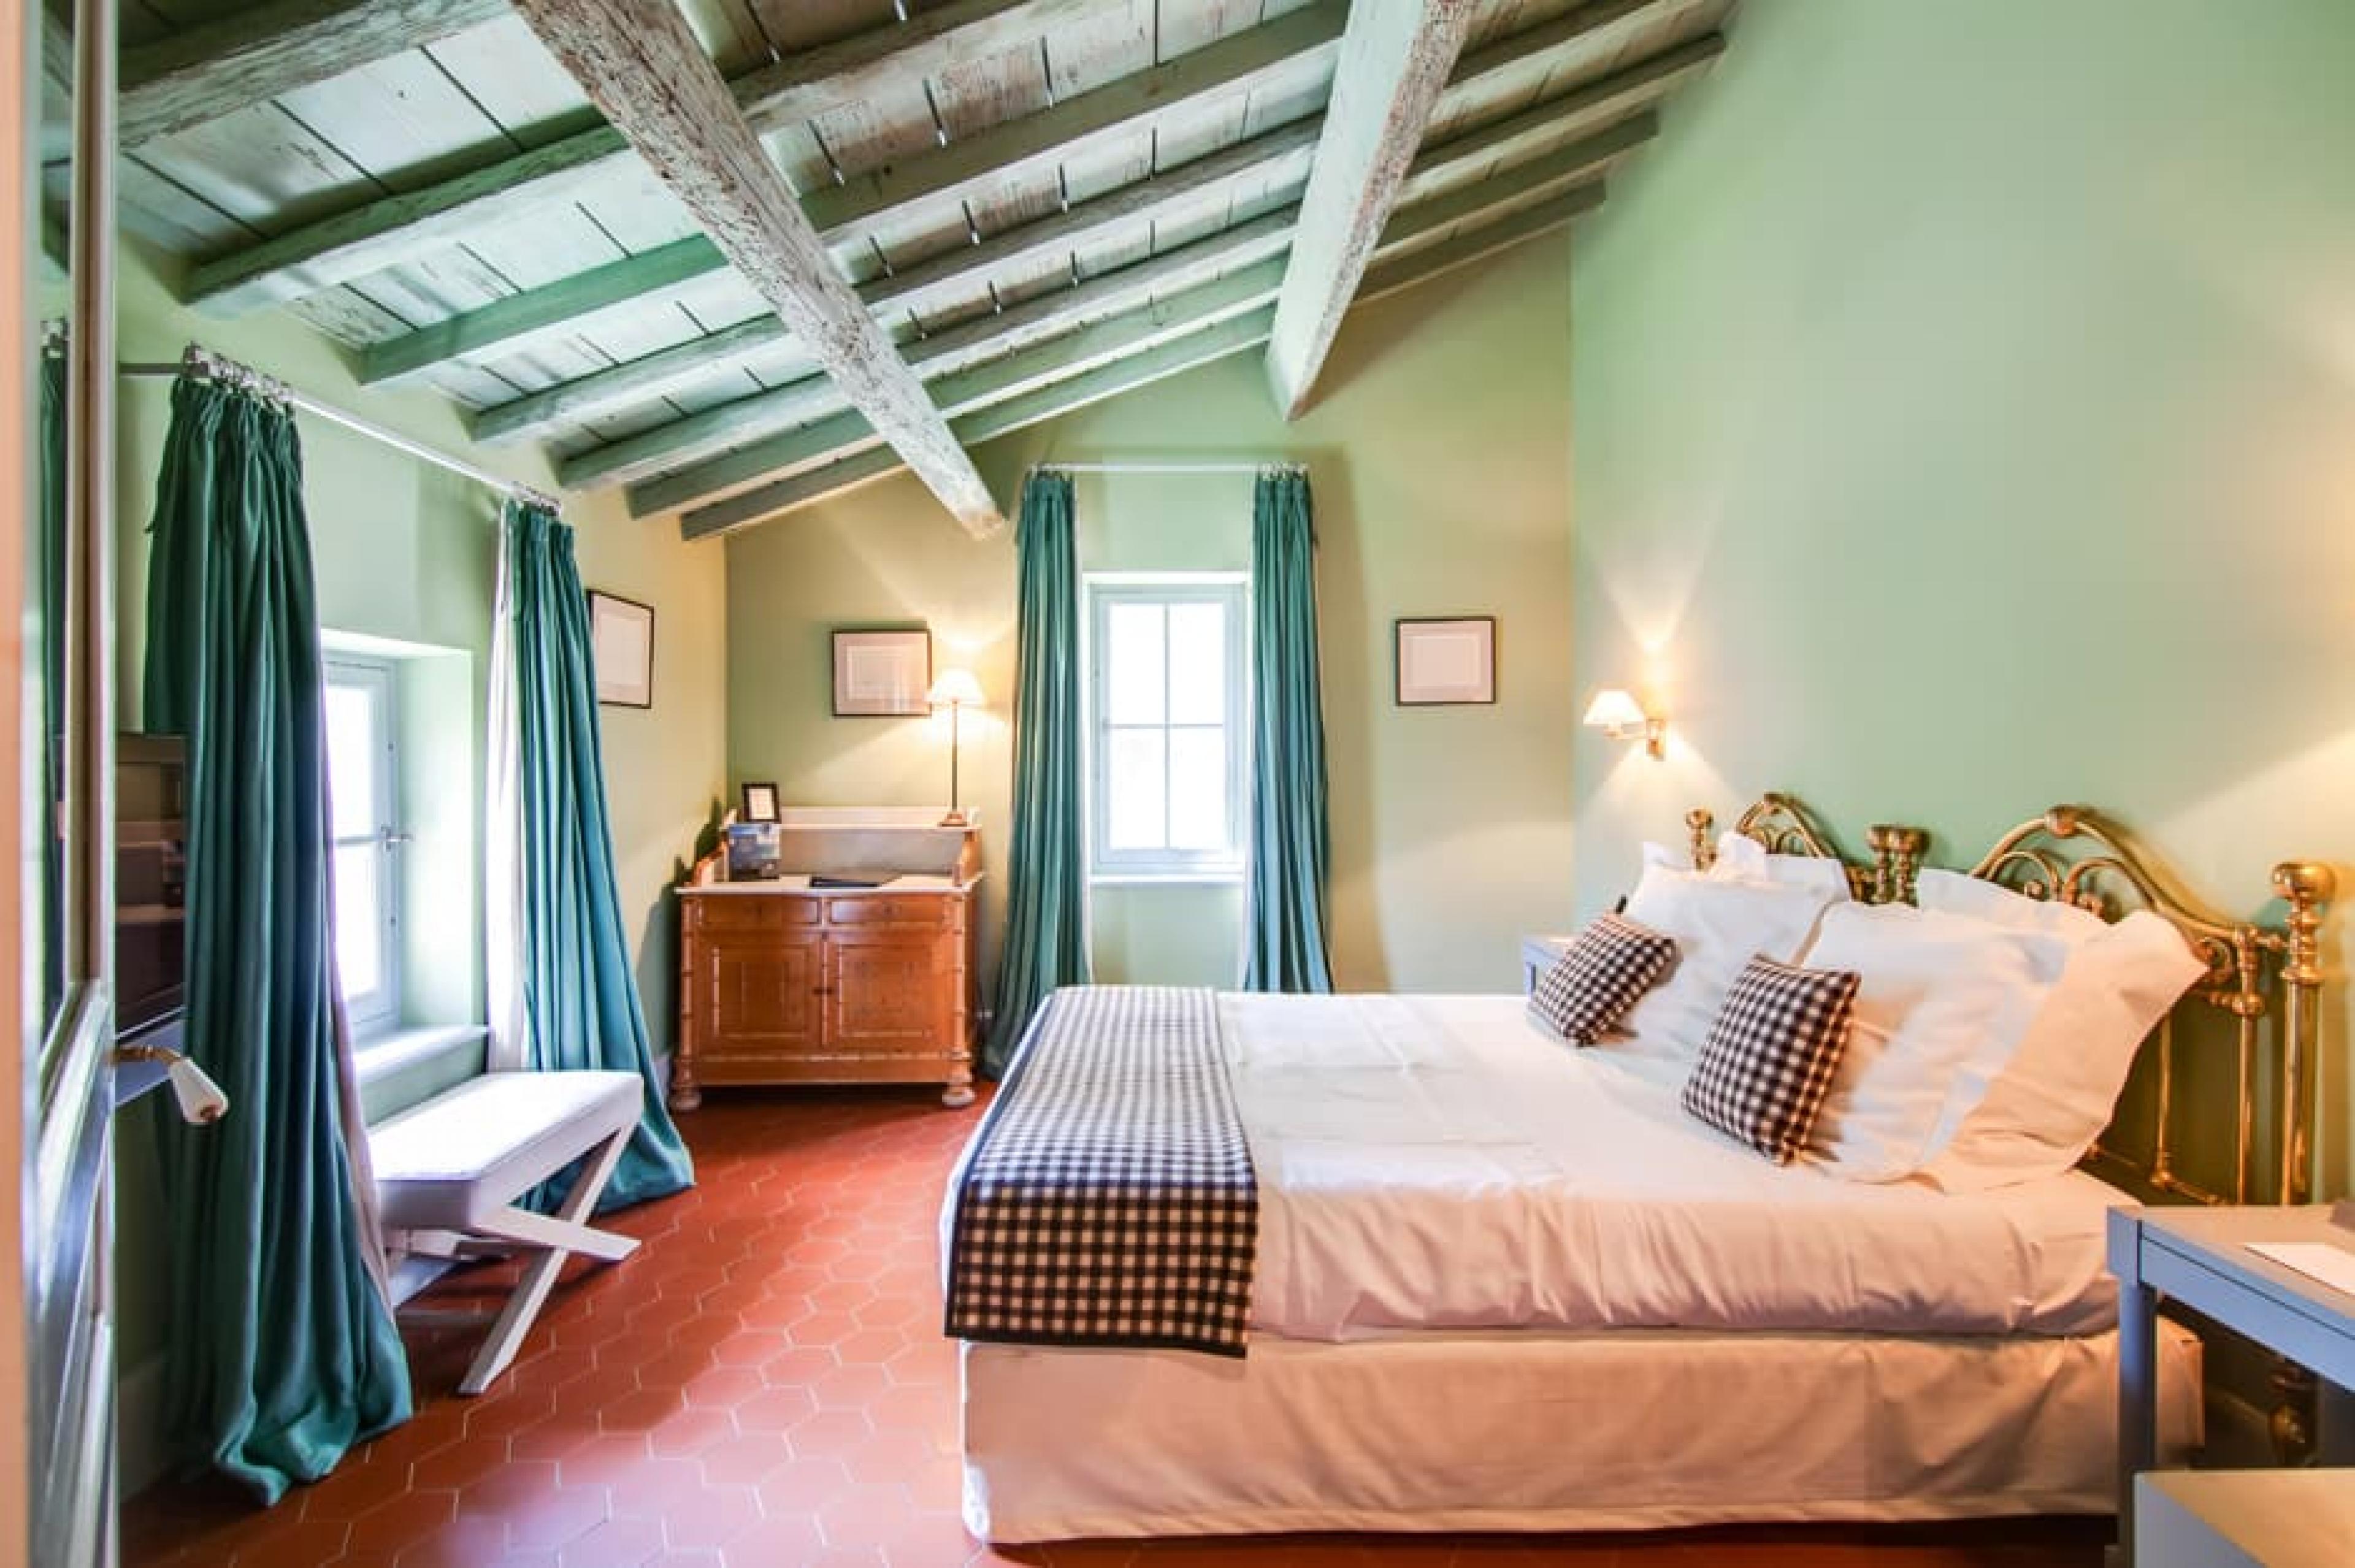 Bedroom at Le Mas de Peint, Provence, France - Photo Courtsey : Chateaux et Hotels Collection